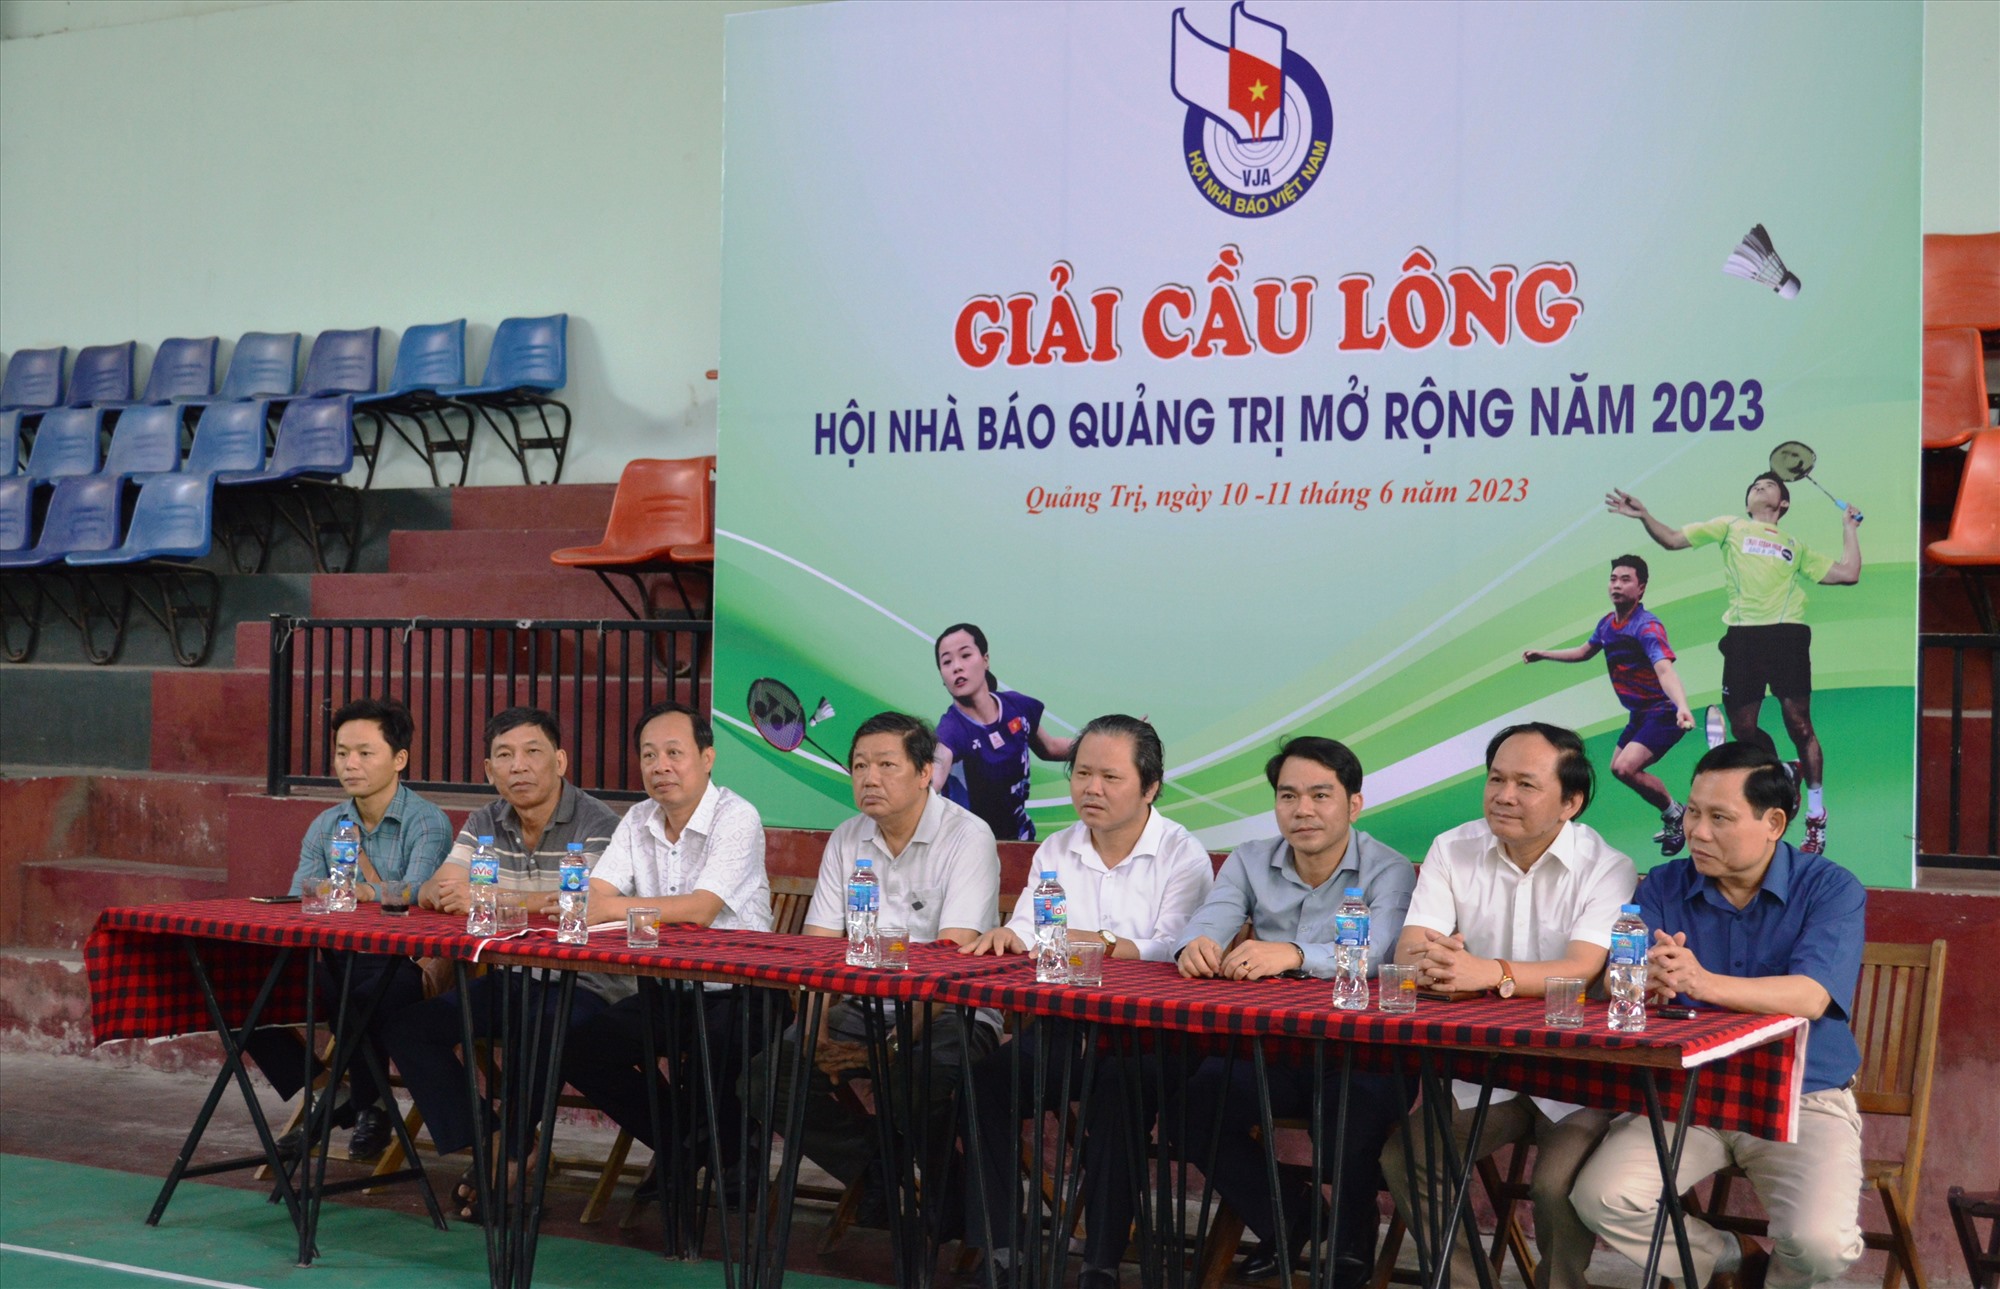 Các đại biểu tham dự Giải cầu lông Hội Nhà báo tỉnh Quảng Trị mở rộng năm 2023 - Ảnh: ĐV